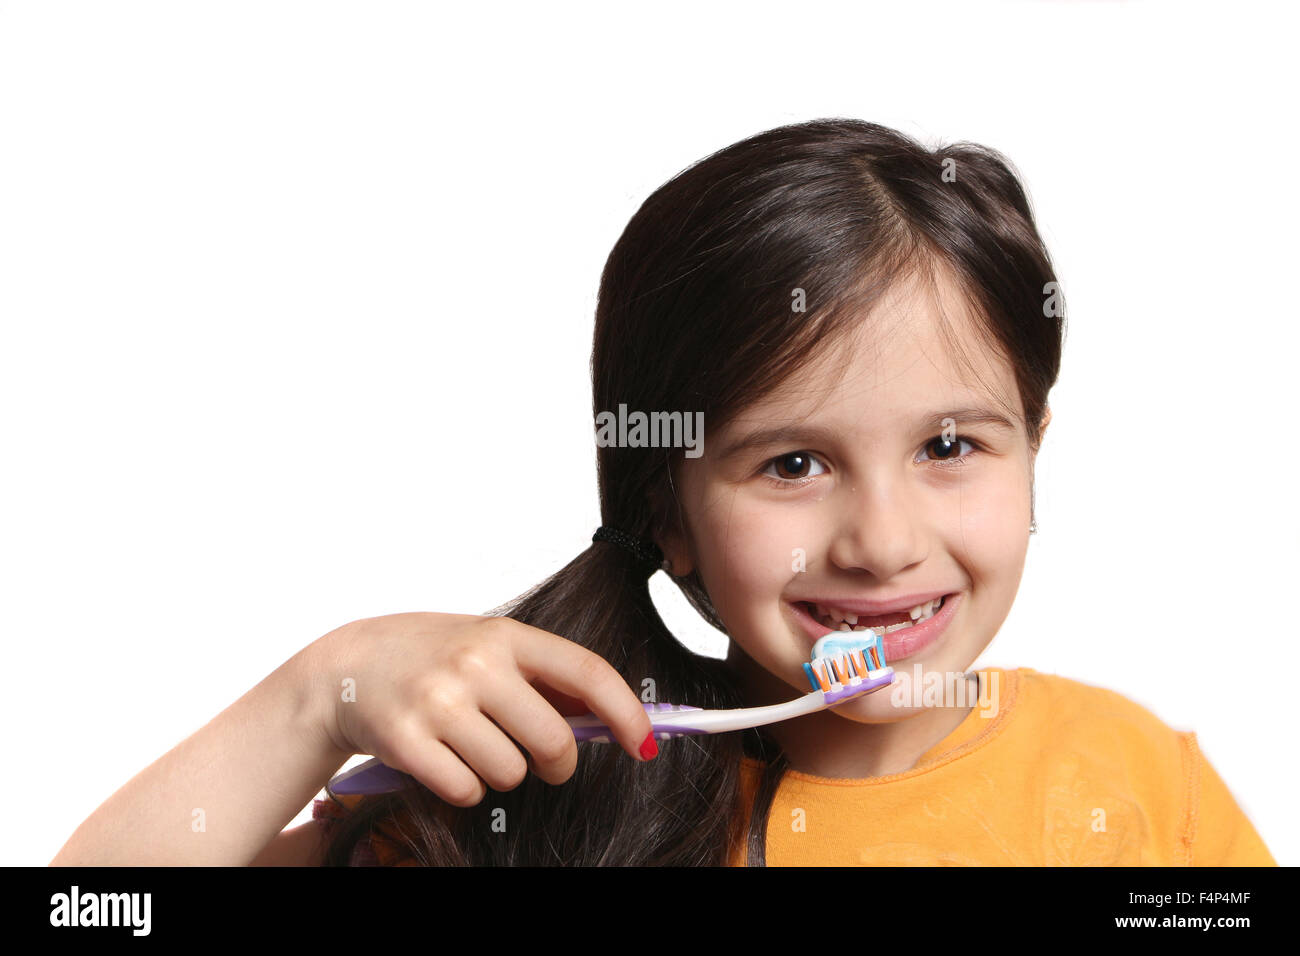 Sieben Jahres altes Mädchen zeigt großes Lächeln zeigt, fehlen die oberen Schneidezähne und halten eine Zahnbürste mit Zahnpasta auf einem weißen b Stockfoto